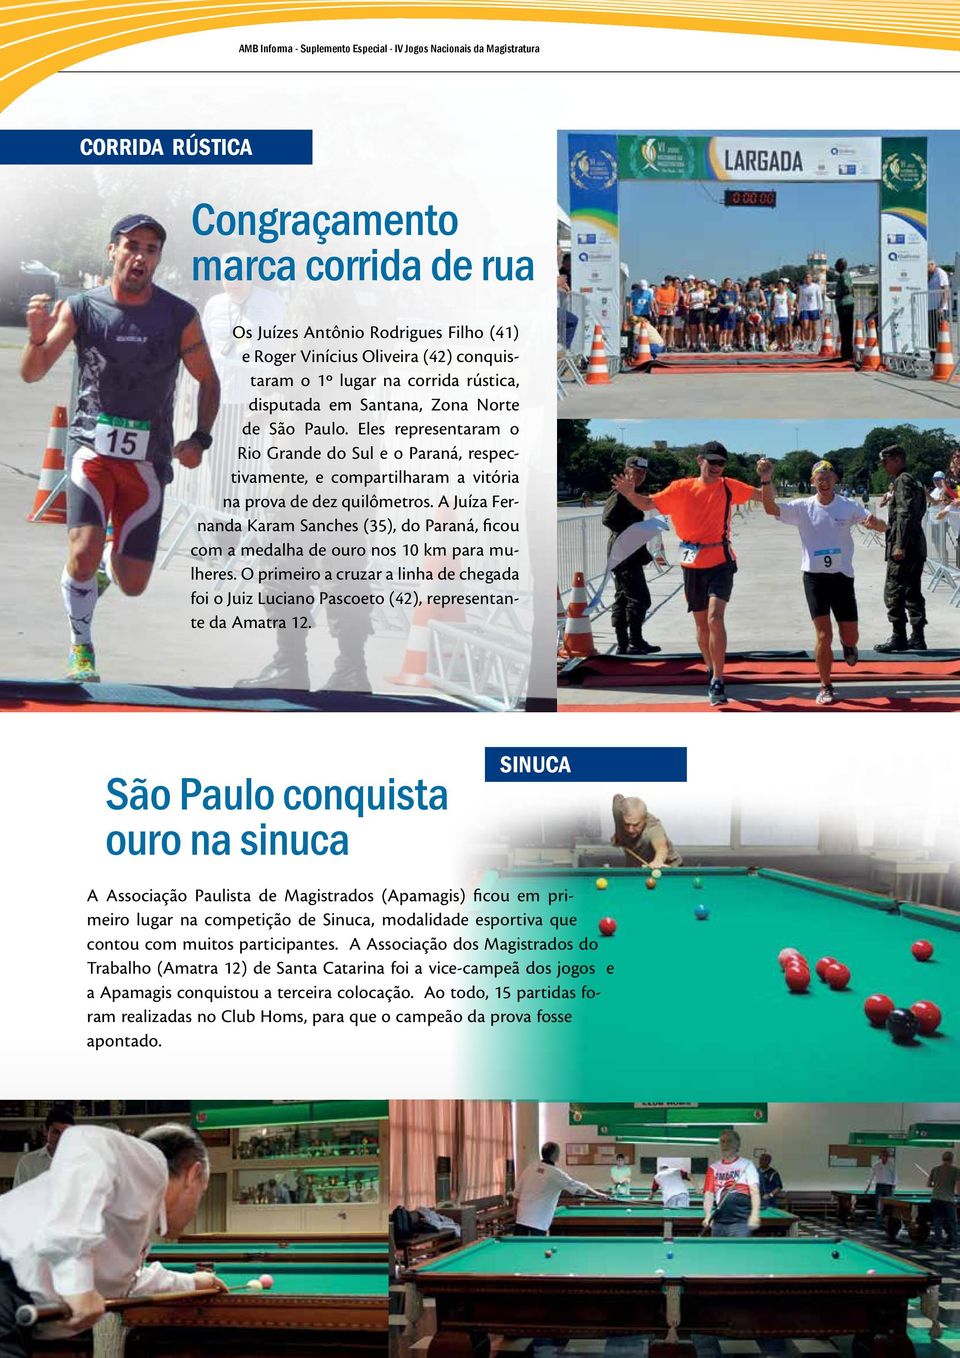 Eles representaram o Rio Grande do Sul e o Paraná, respectivamente, e compartilharam a vitória na prova de dez quilômetros.